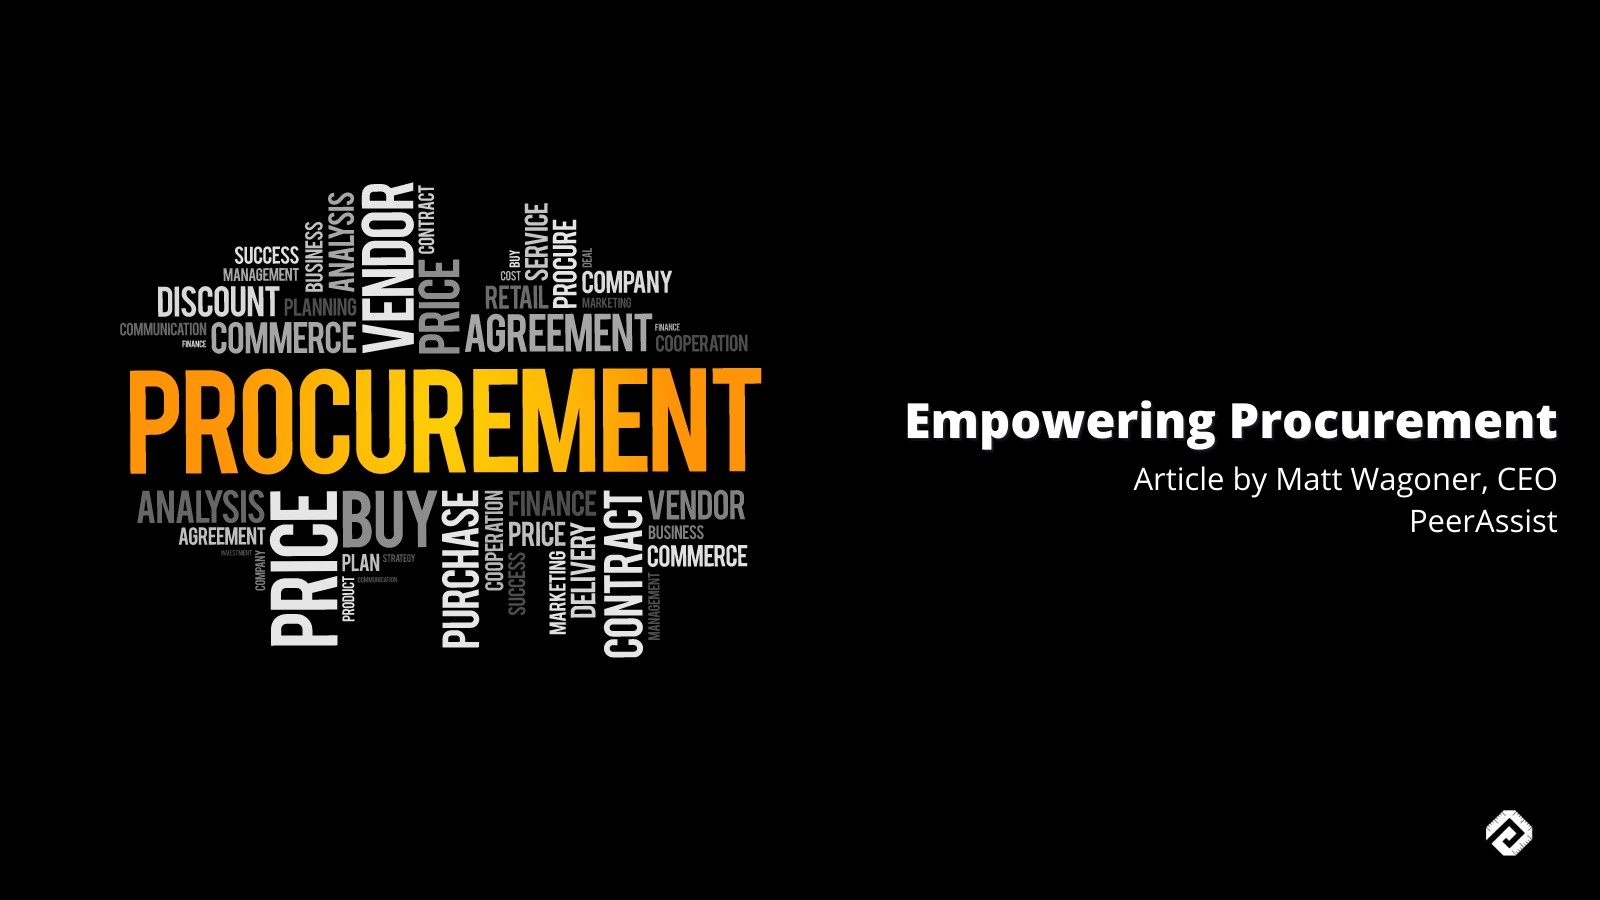 Empowering Procurement